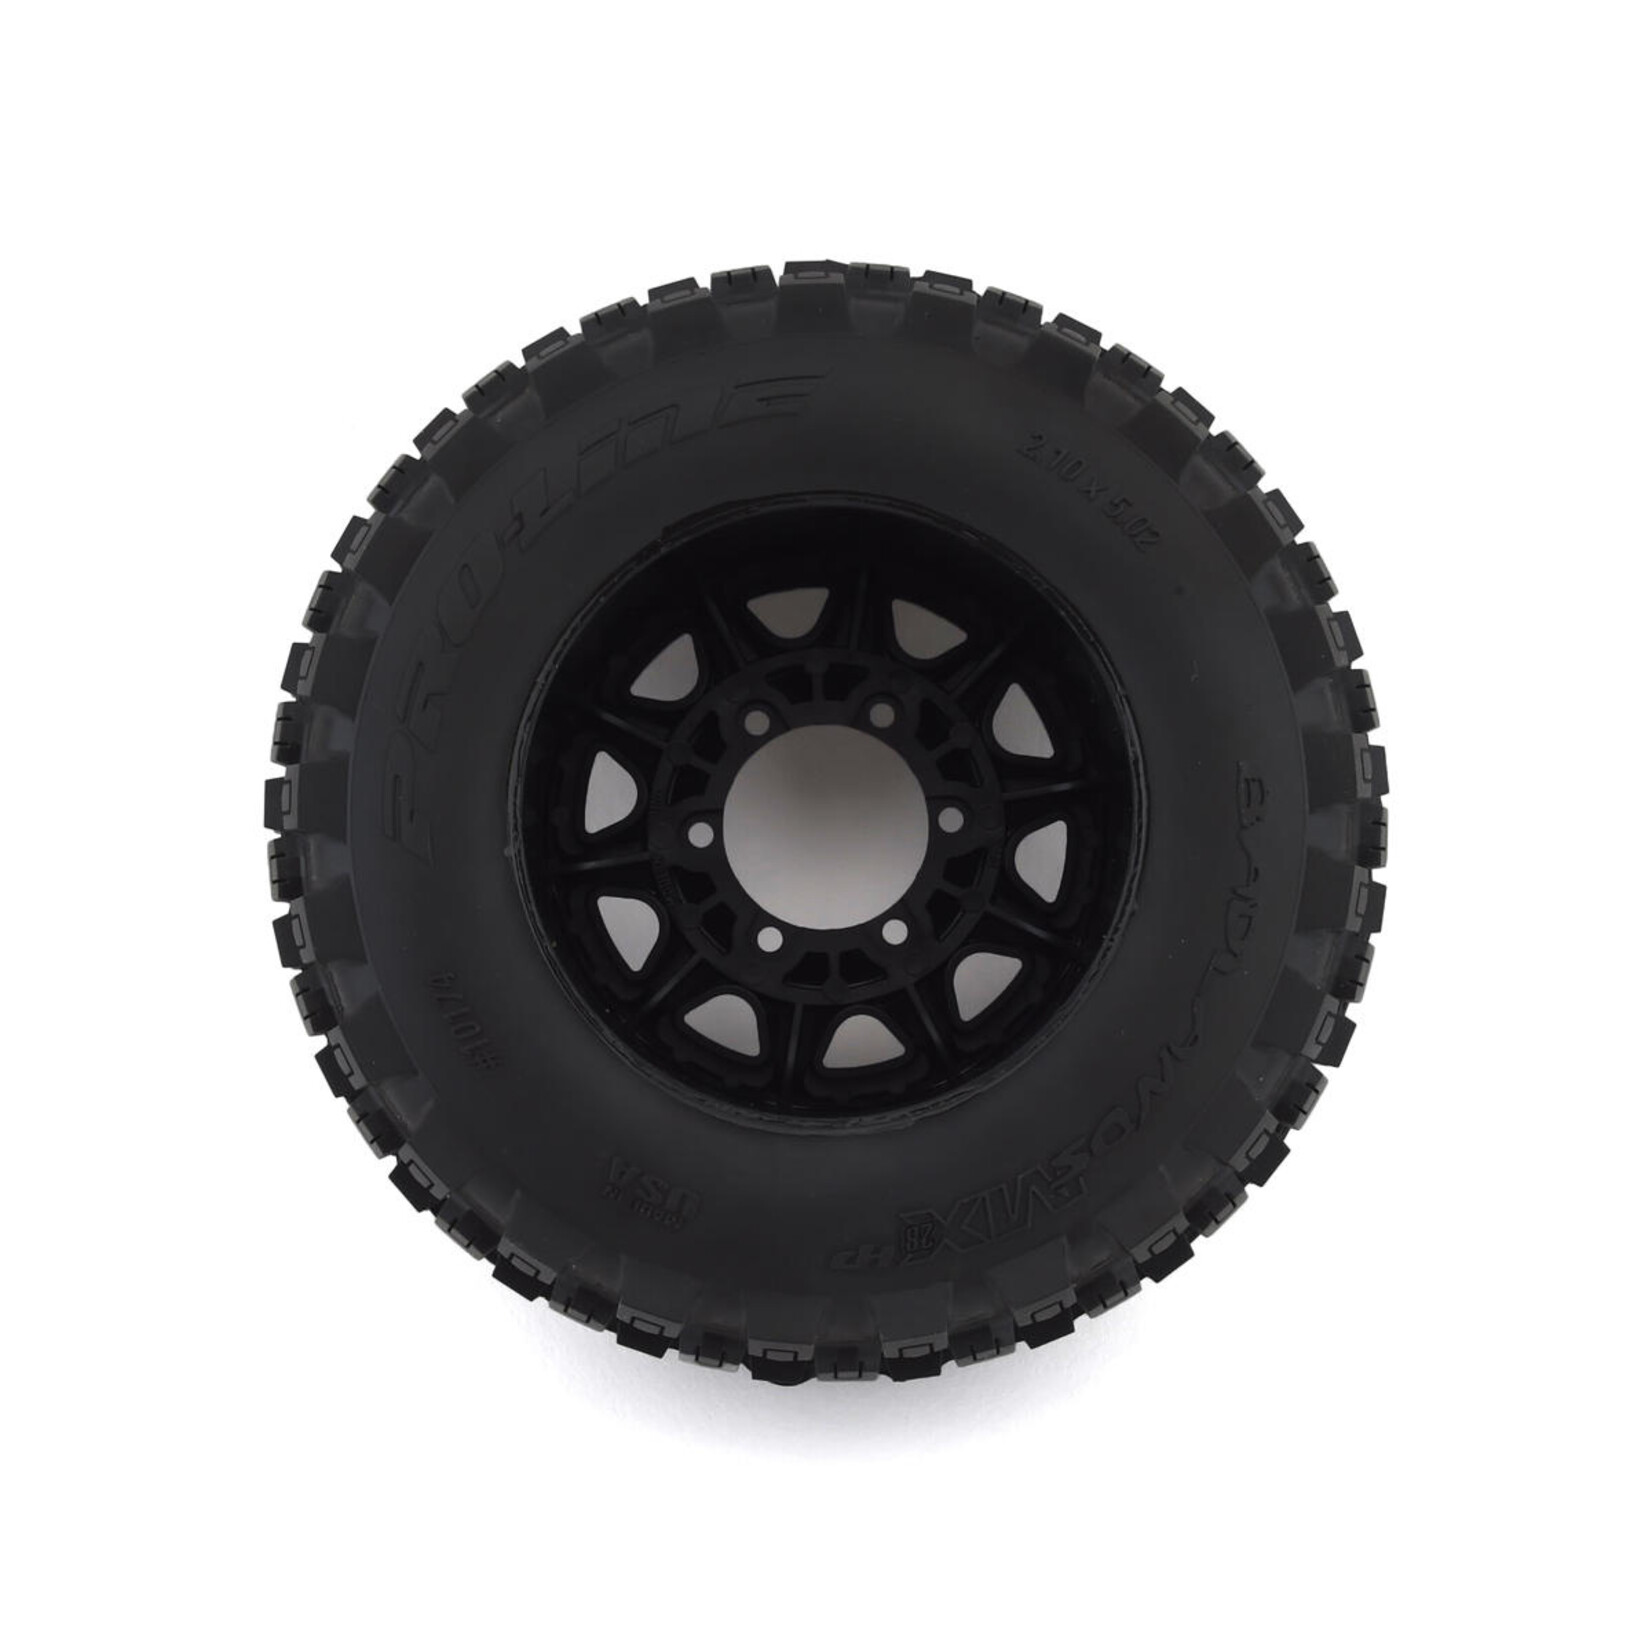 Pro-Line Pro-Line Badlands MX28 Belted 2.8" Pre-Mounted Truck Tires (2) (Black) (M2) #10174-10